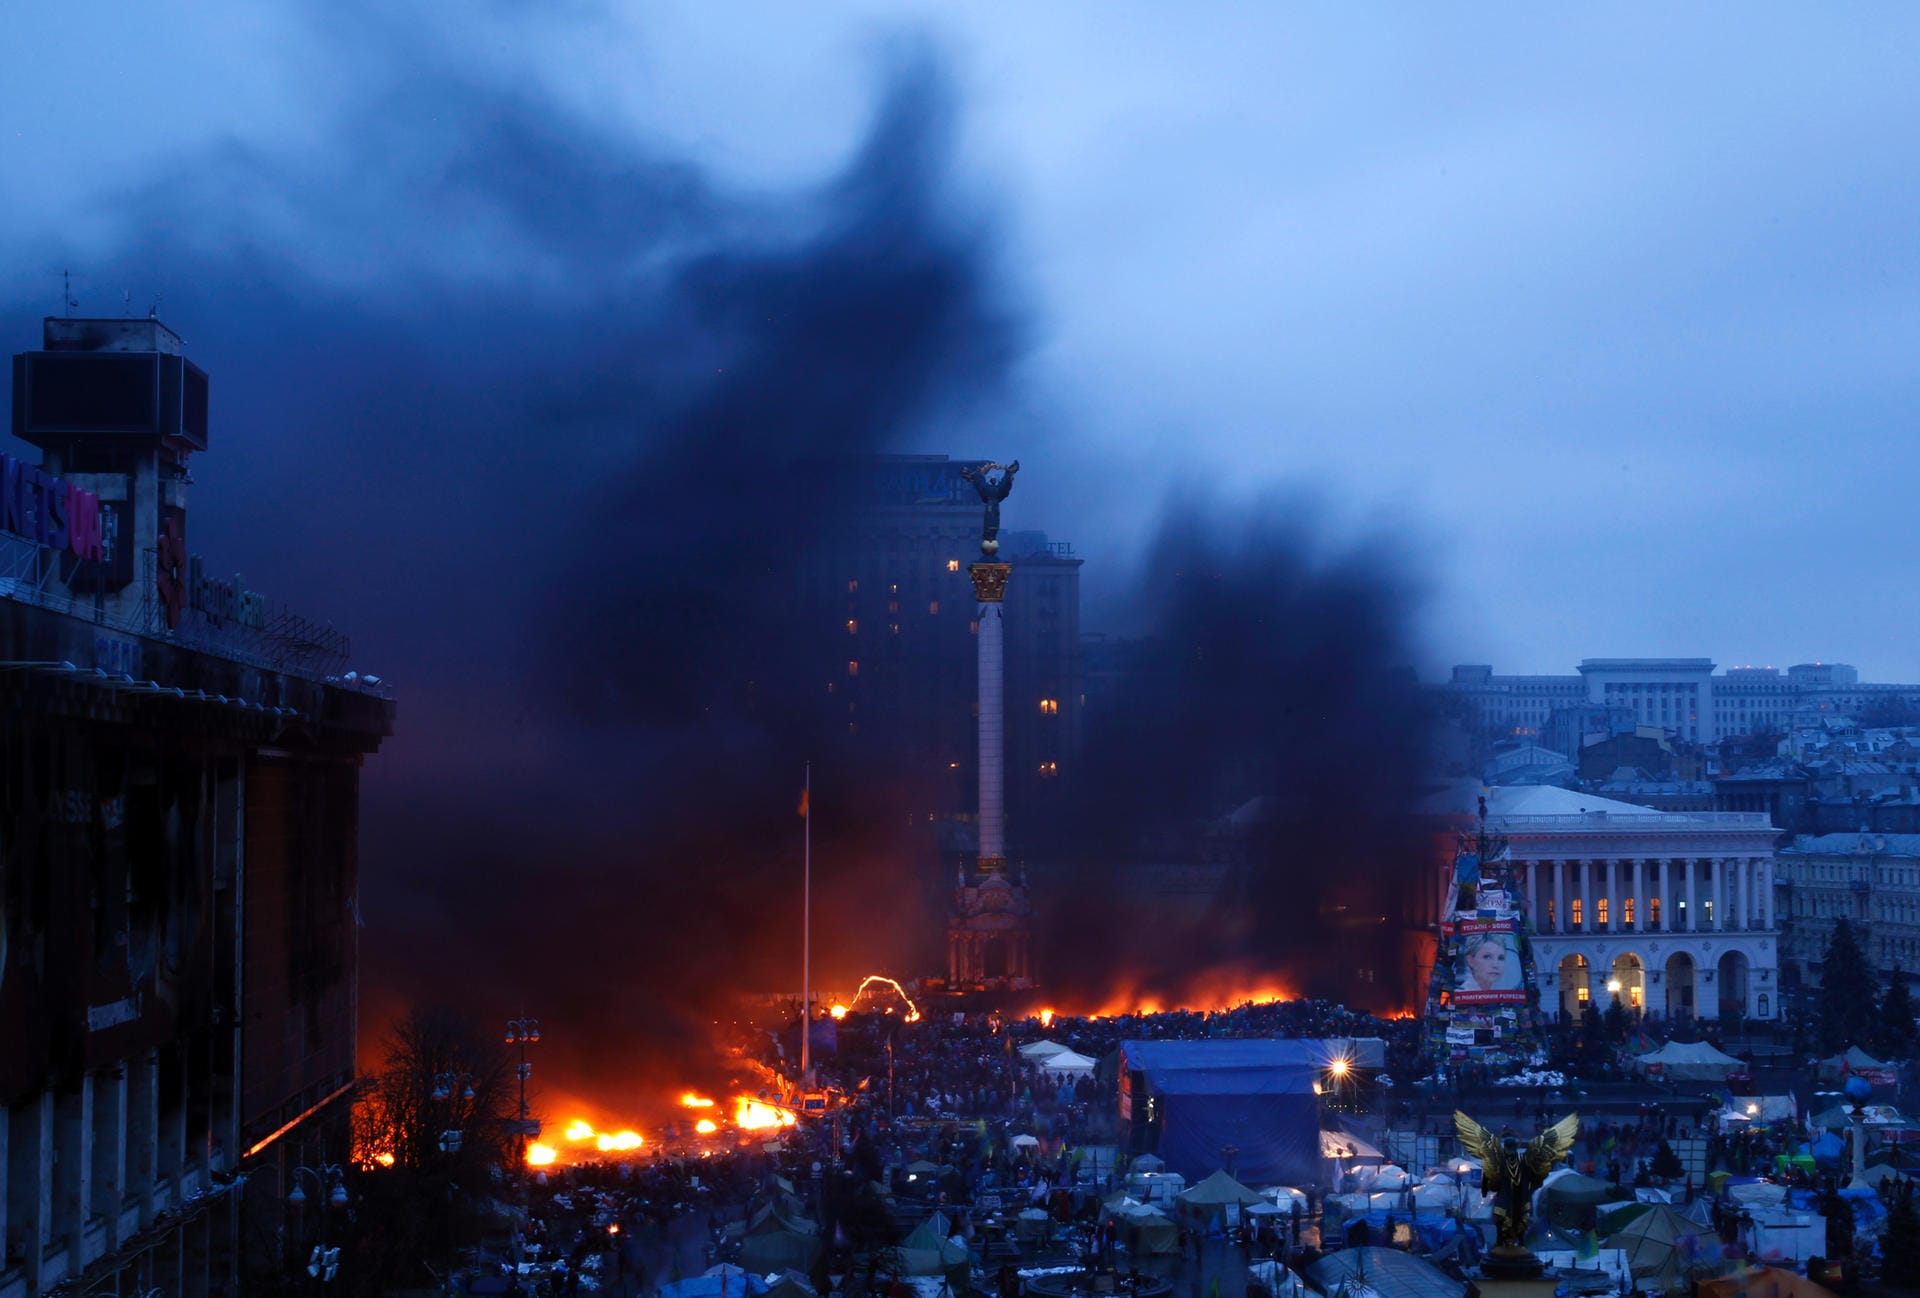 19. Februar 2014: Der Maidan-Platz steht in Flammen. Gebäude, Zelte und Barrikaden brennen. Es toben heftige Kämpfe.